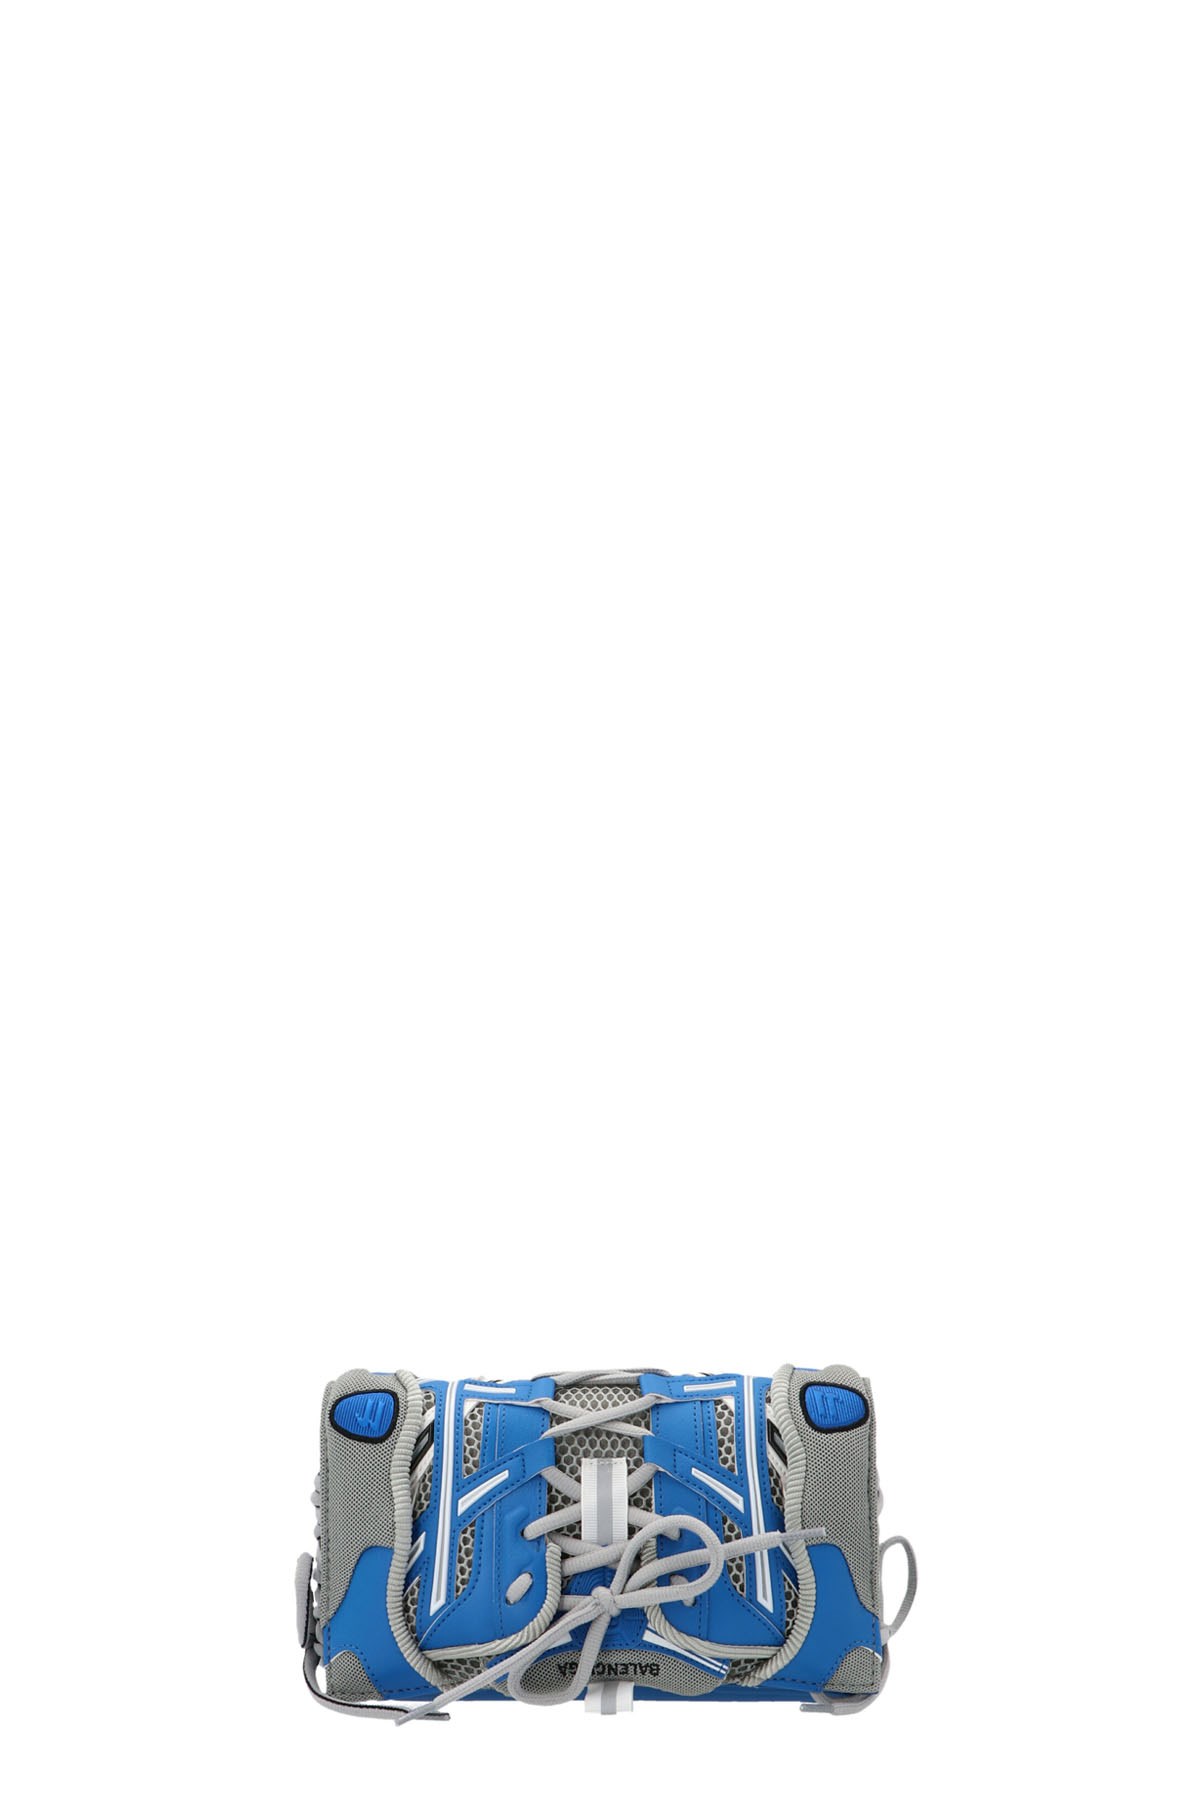 BALENCIAGA 'Sneakerhead’ Smartphone Crossbody Bag